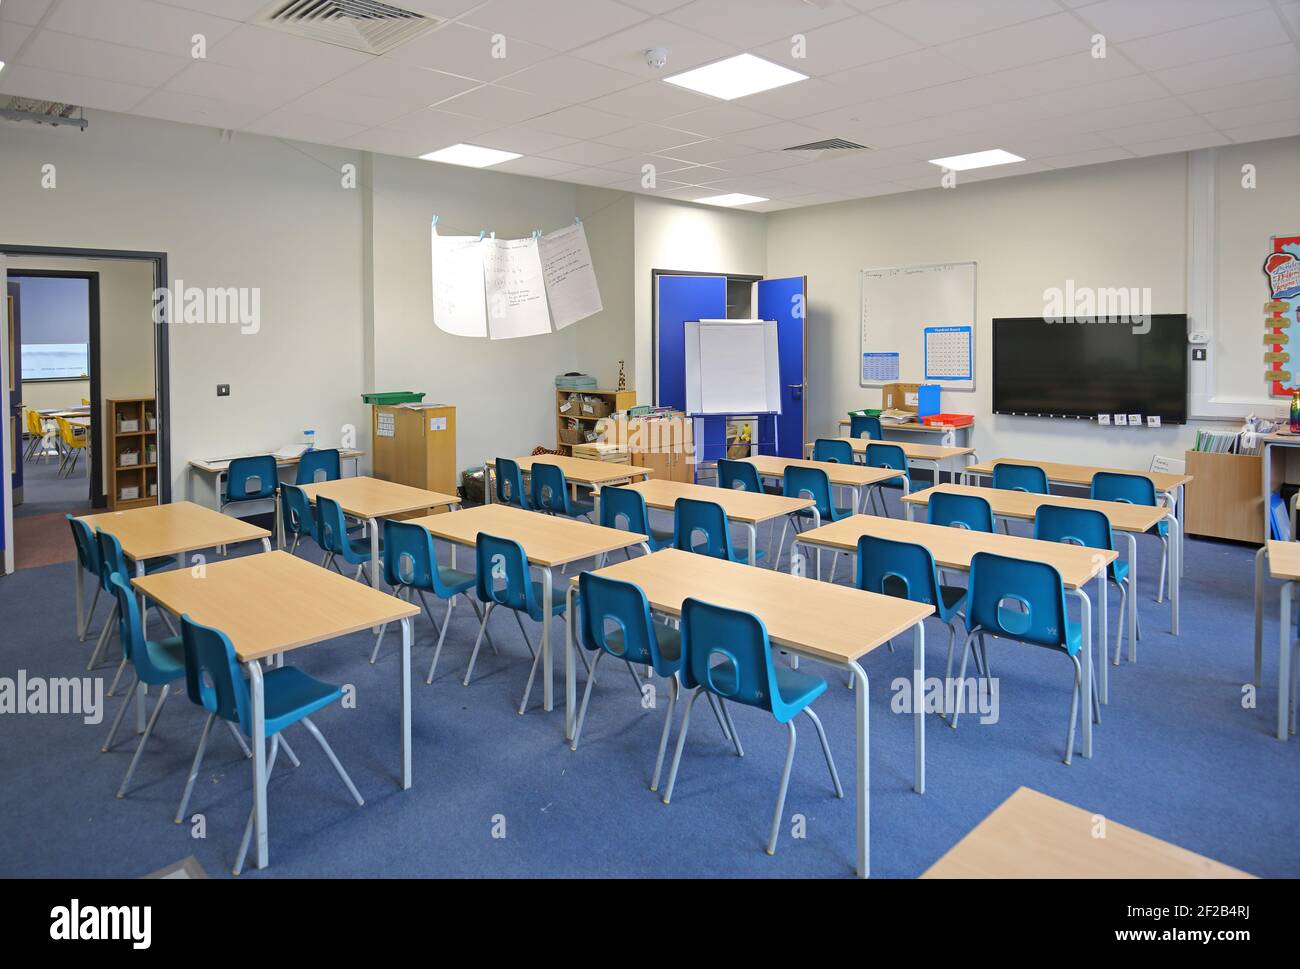 Traditionell in einer neuen Grundschule im Süden Londons, Großbritannien, in einem Klassenzimmer untergebracht. Die Schreibtische sind zur Sicherheit während der Covid-Pandemie 2020 nach vorne gestellt. Stockfoto